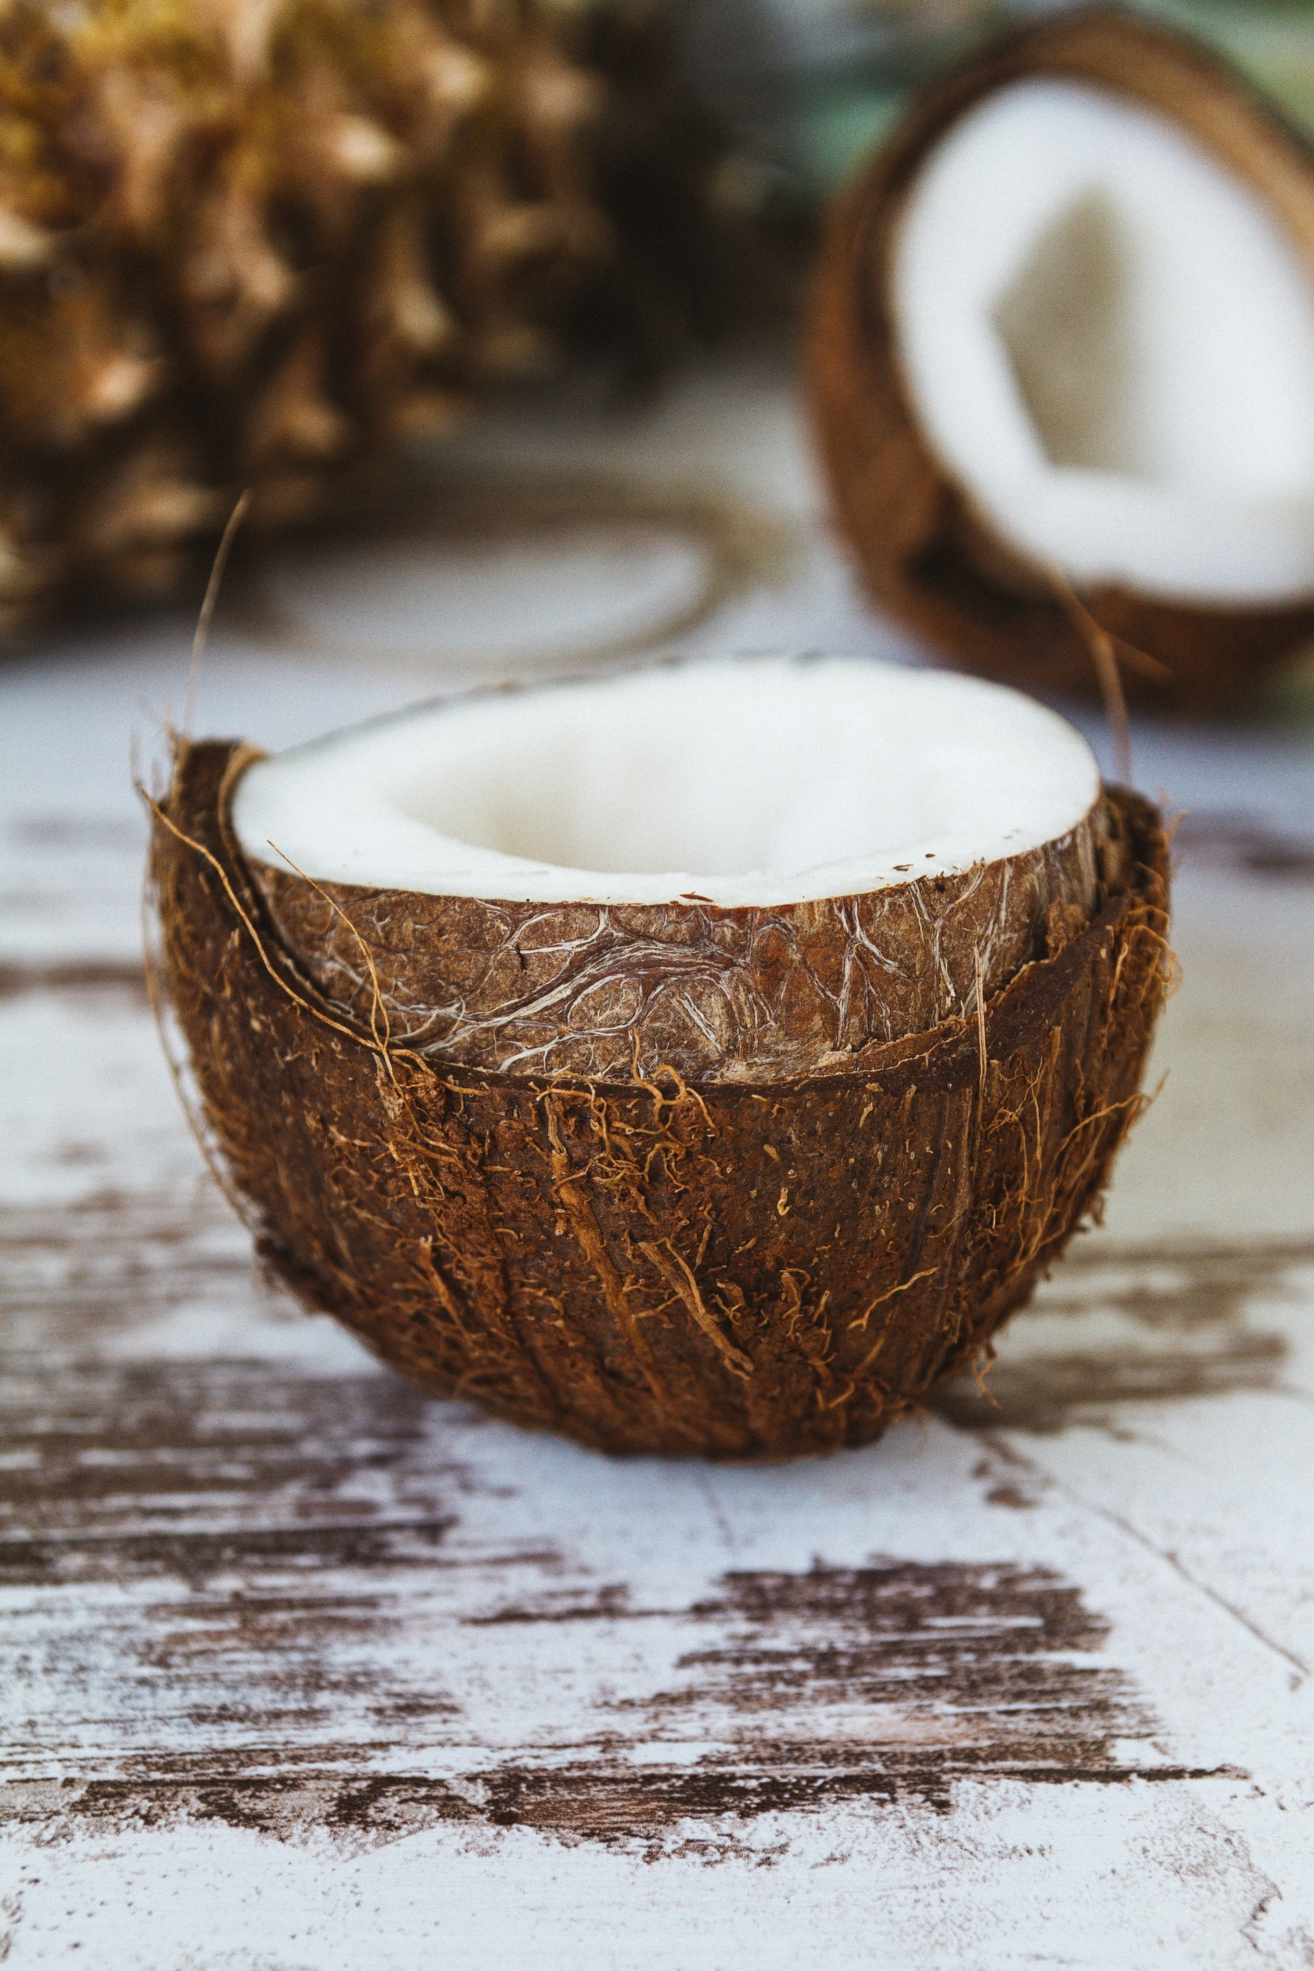 deutscher blogpost von influencer jasmin kessler über kokosöl #cleanbeauty